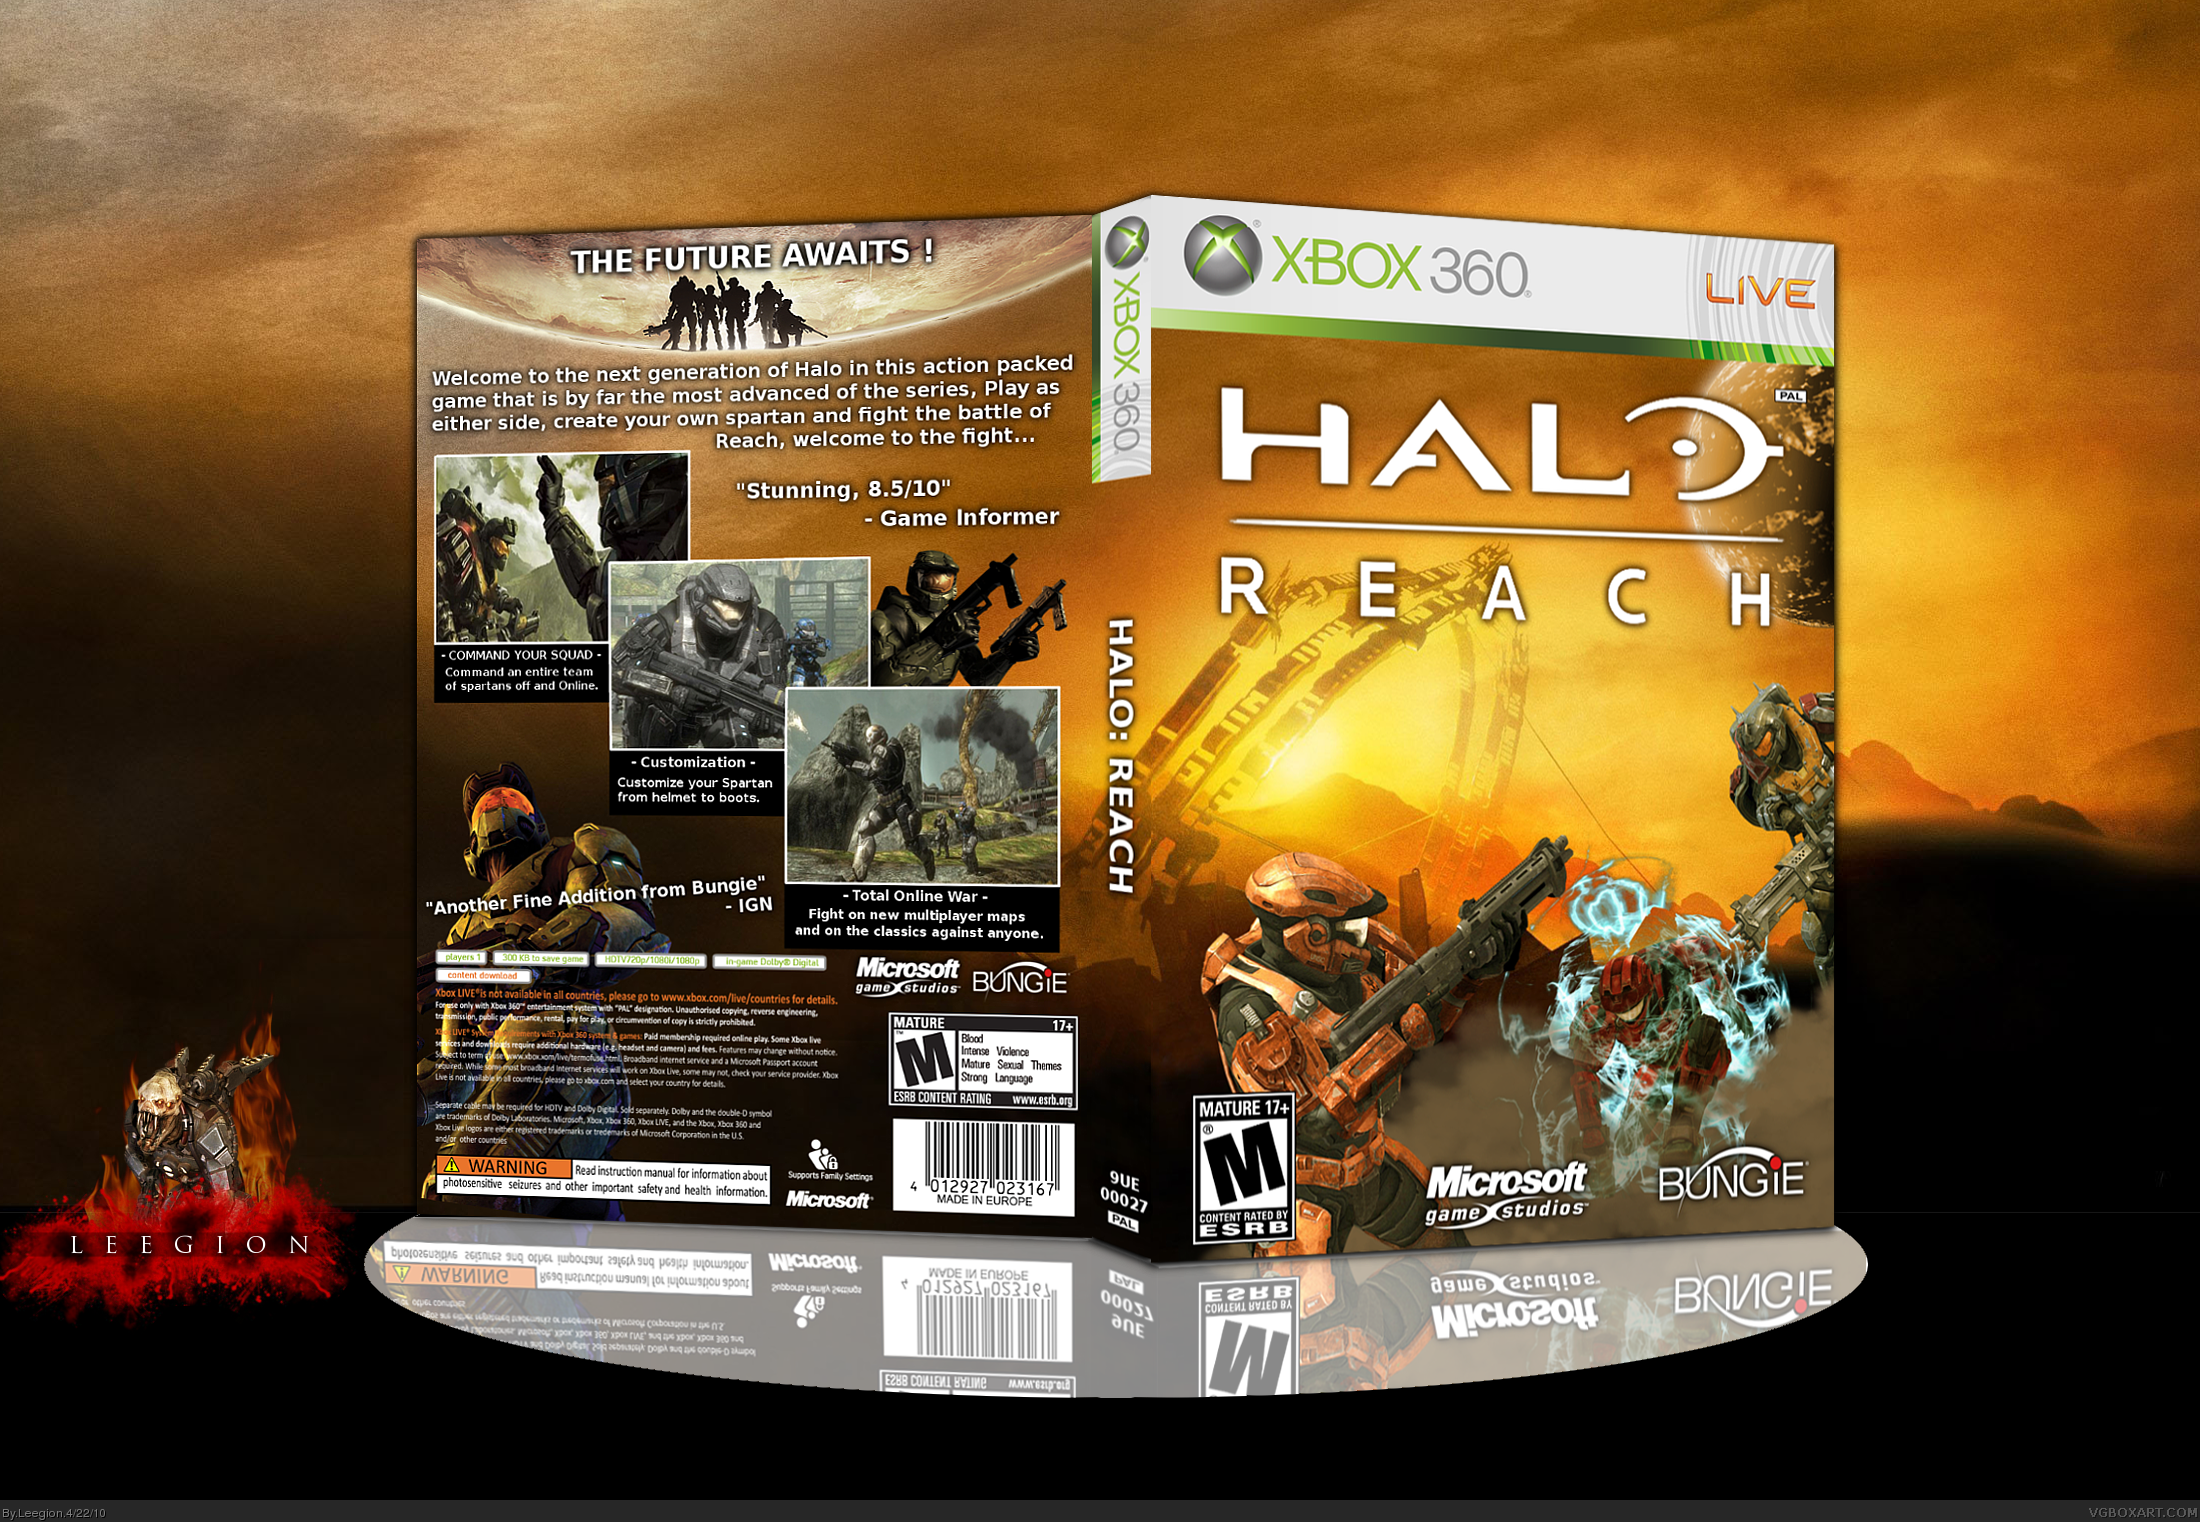 Halo: Reach box cover